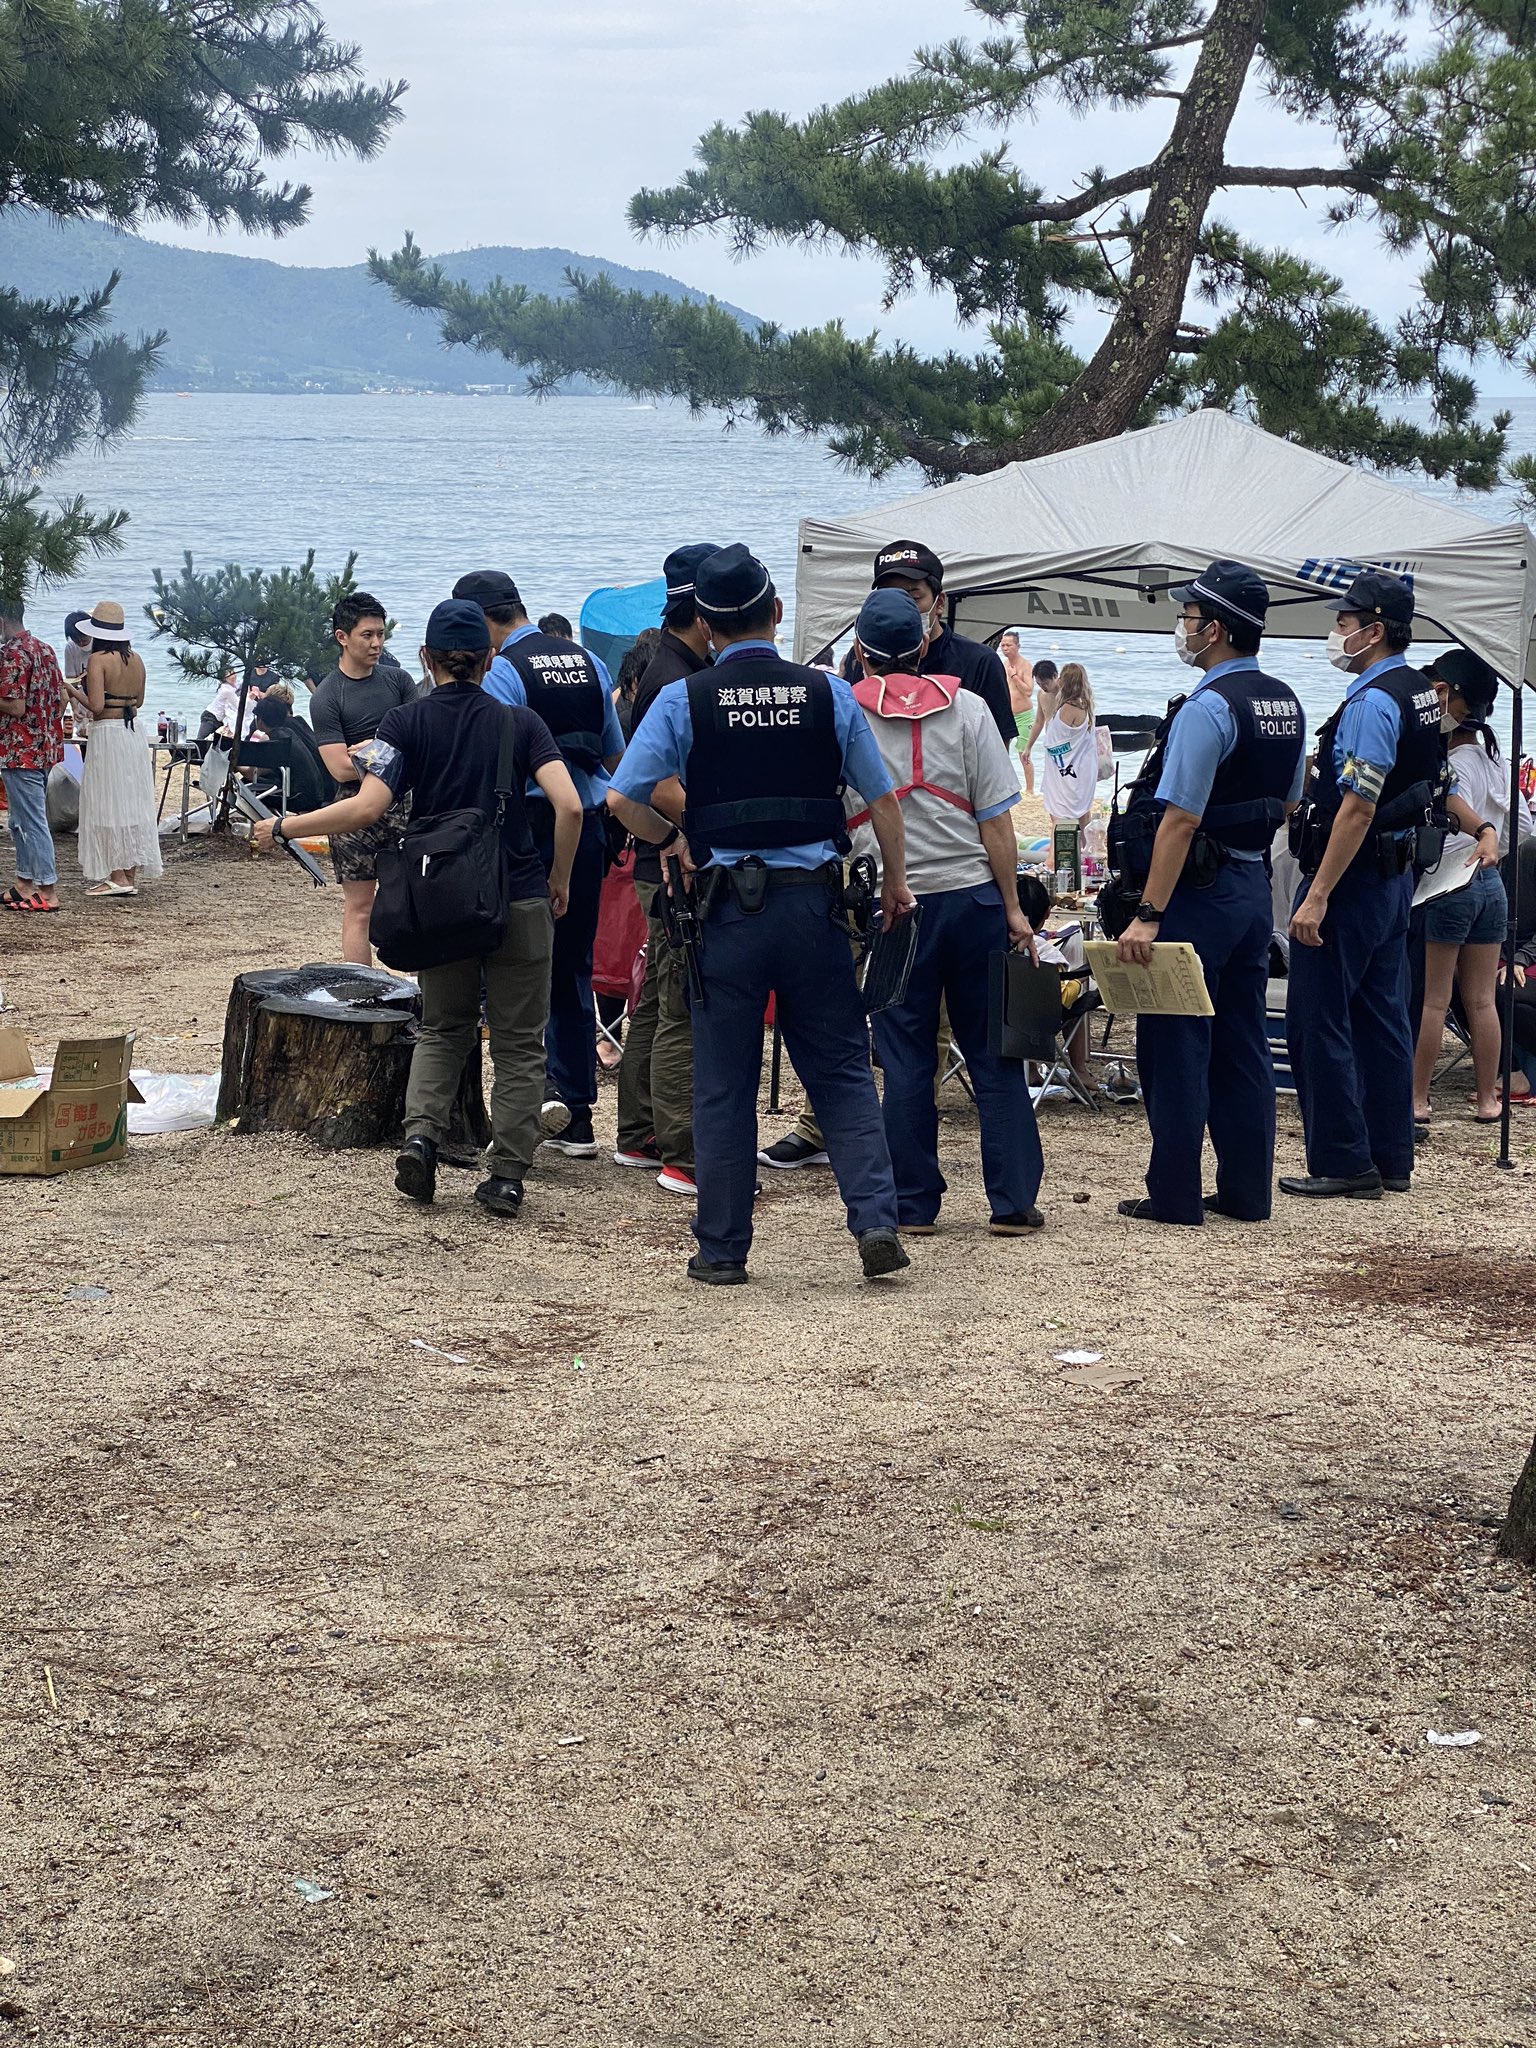 水難 事故 琵琶湖 琵琶湖で２遺体見つかる ３人不明の水難事故